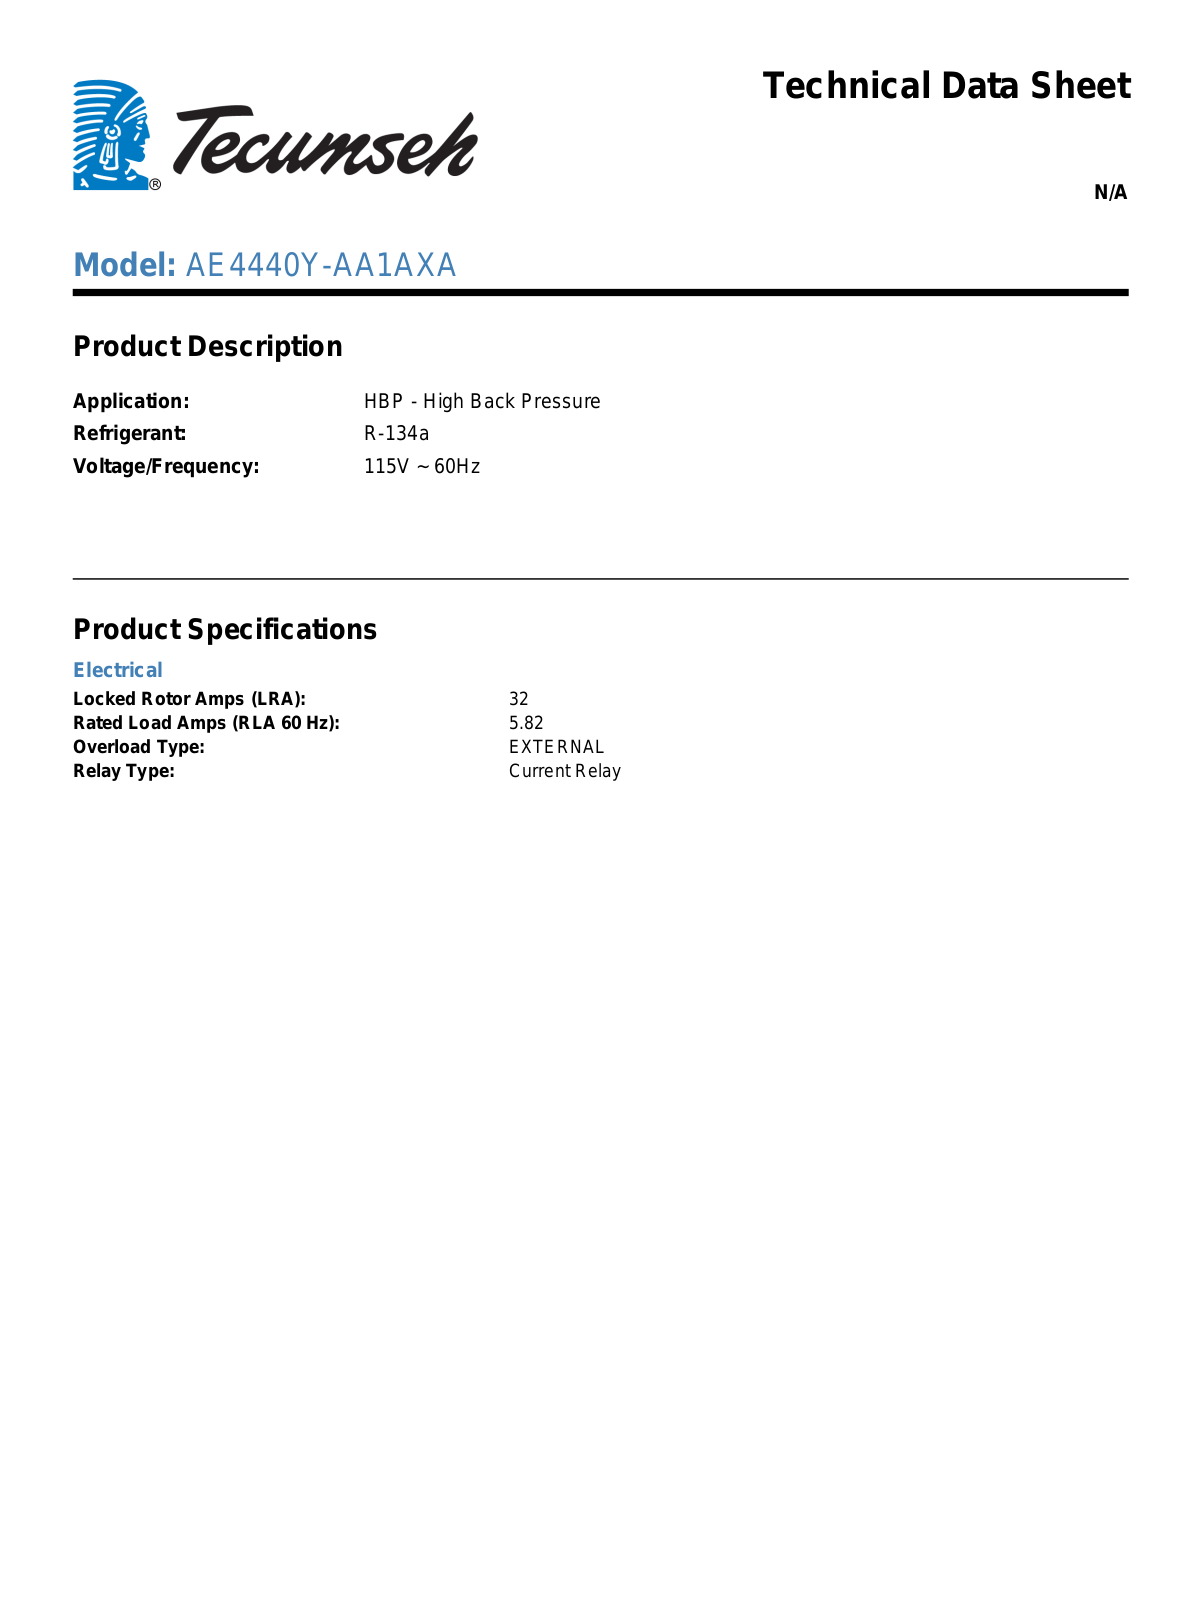 Tecumseh AE4440Y-AA1AXA User Manual